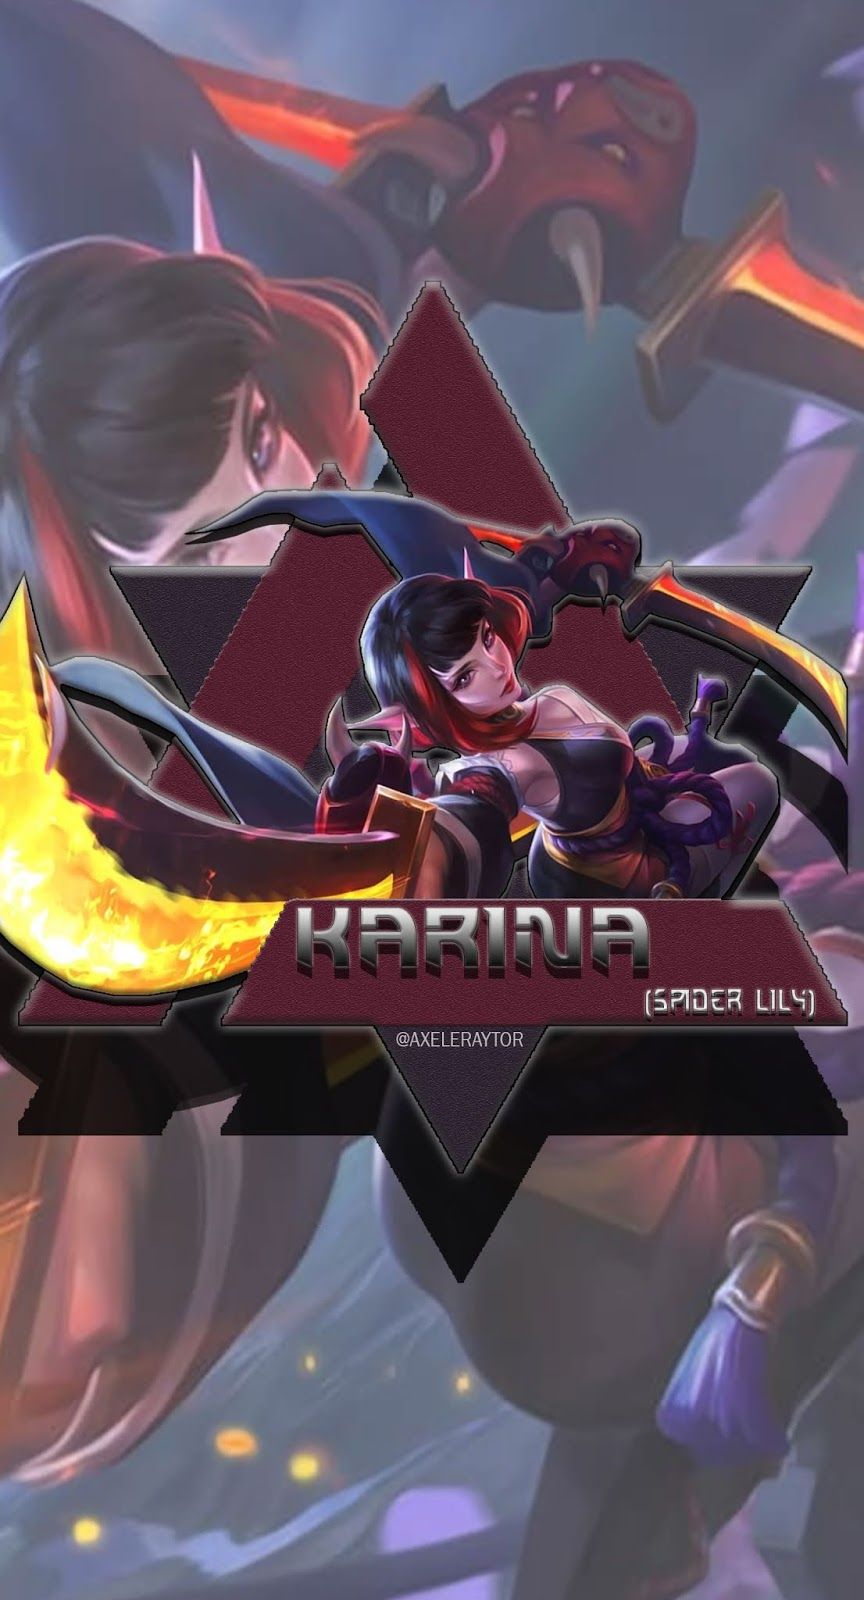 Karina Spider Lily Mobile Legends Wallpaper